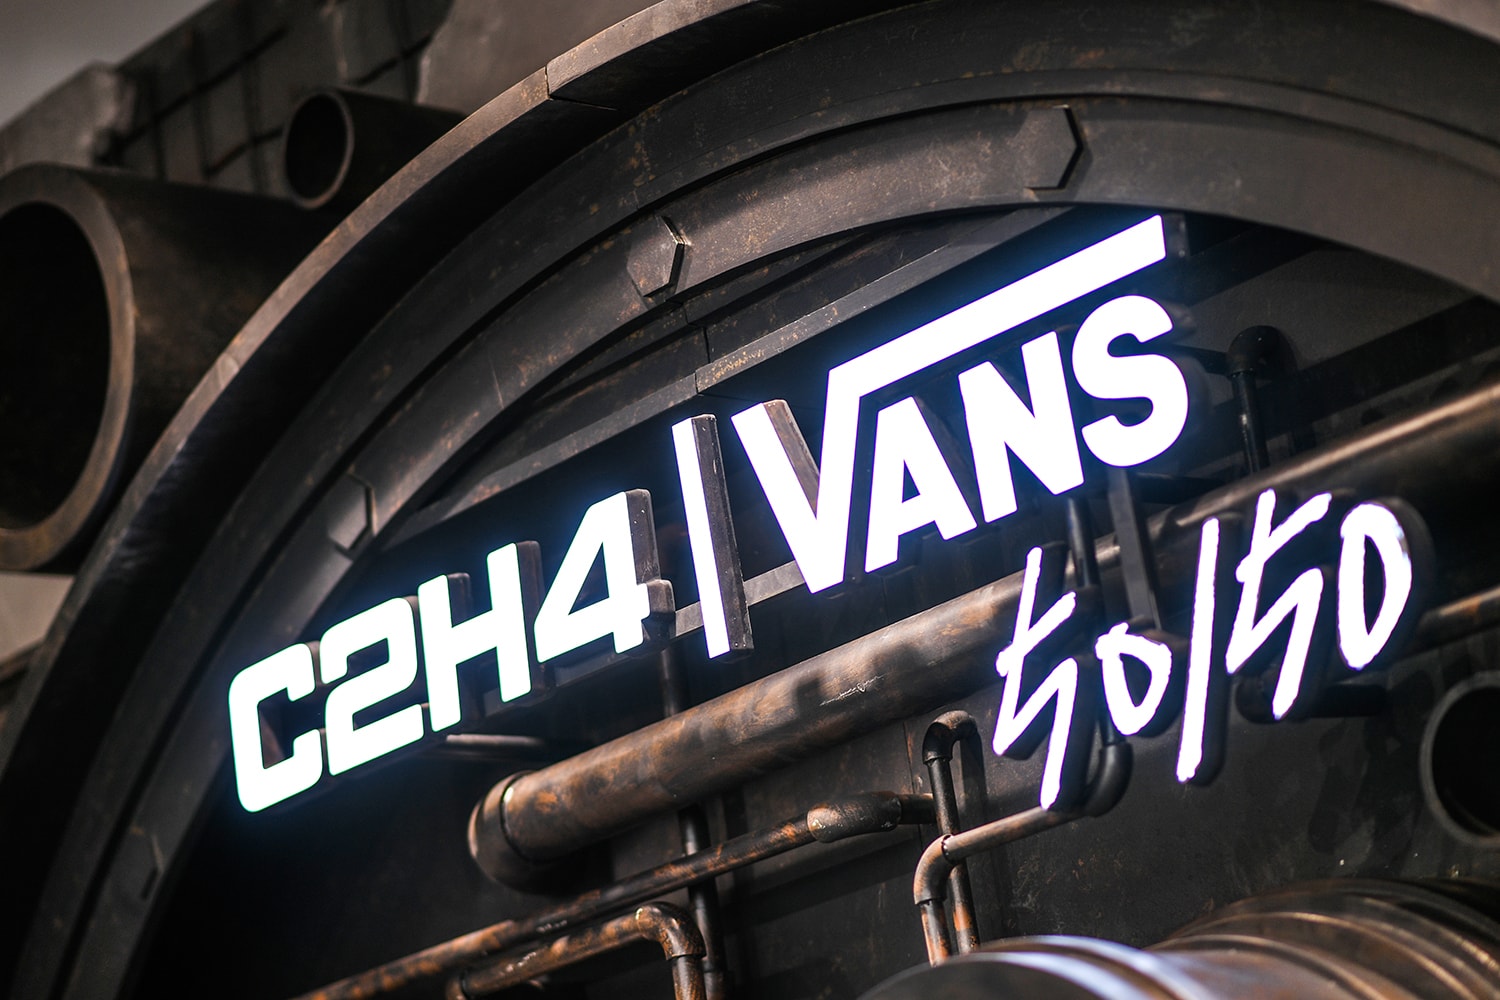 Vans X C2H4 全新「Enlighten 启示」联名企划揭晓